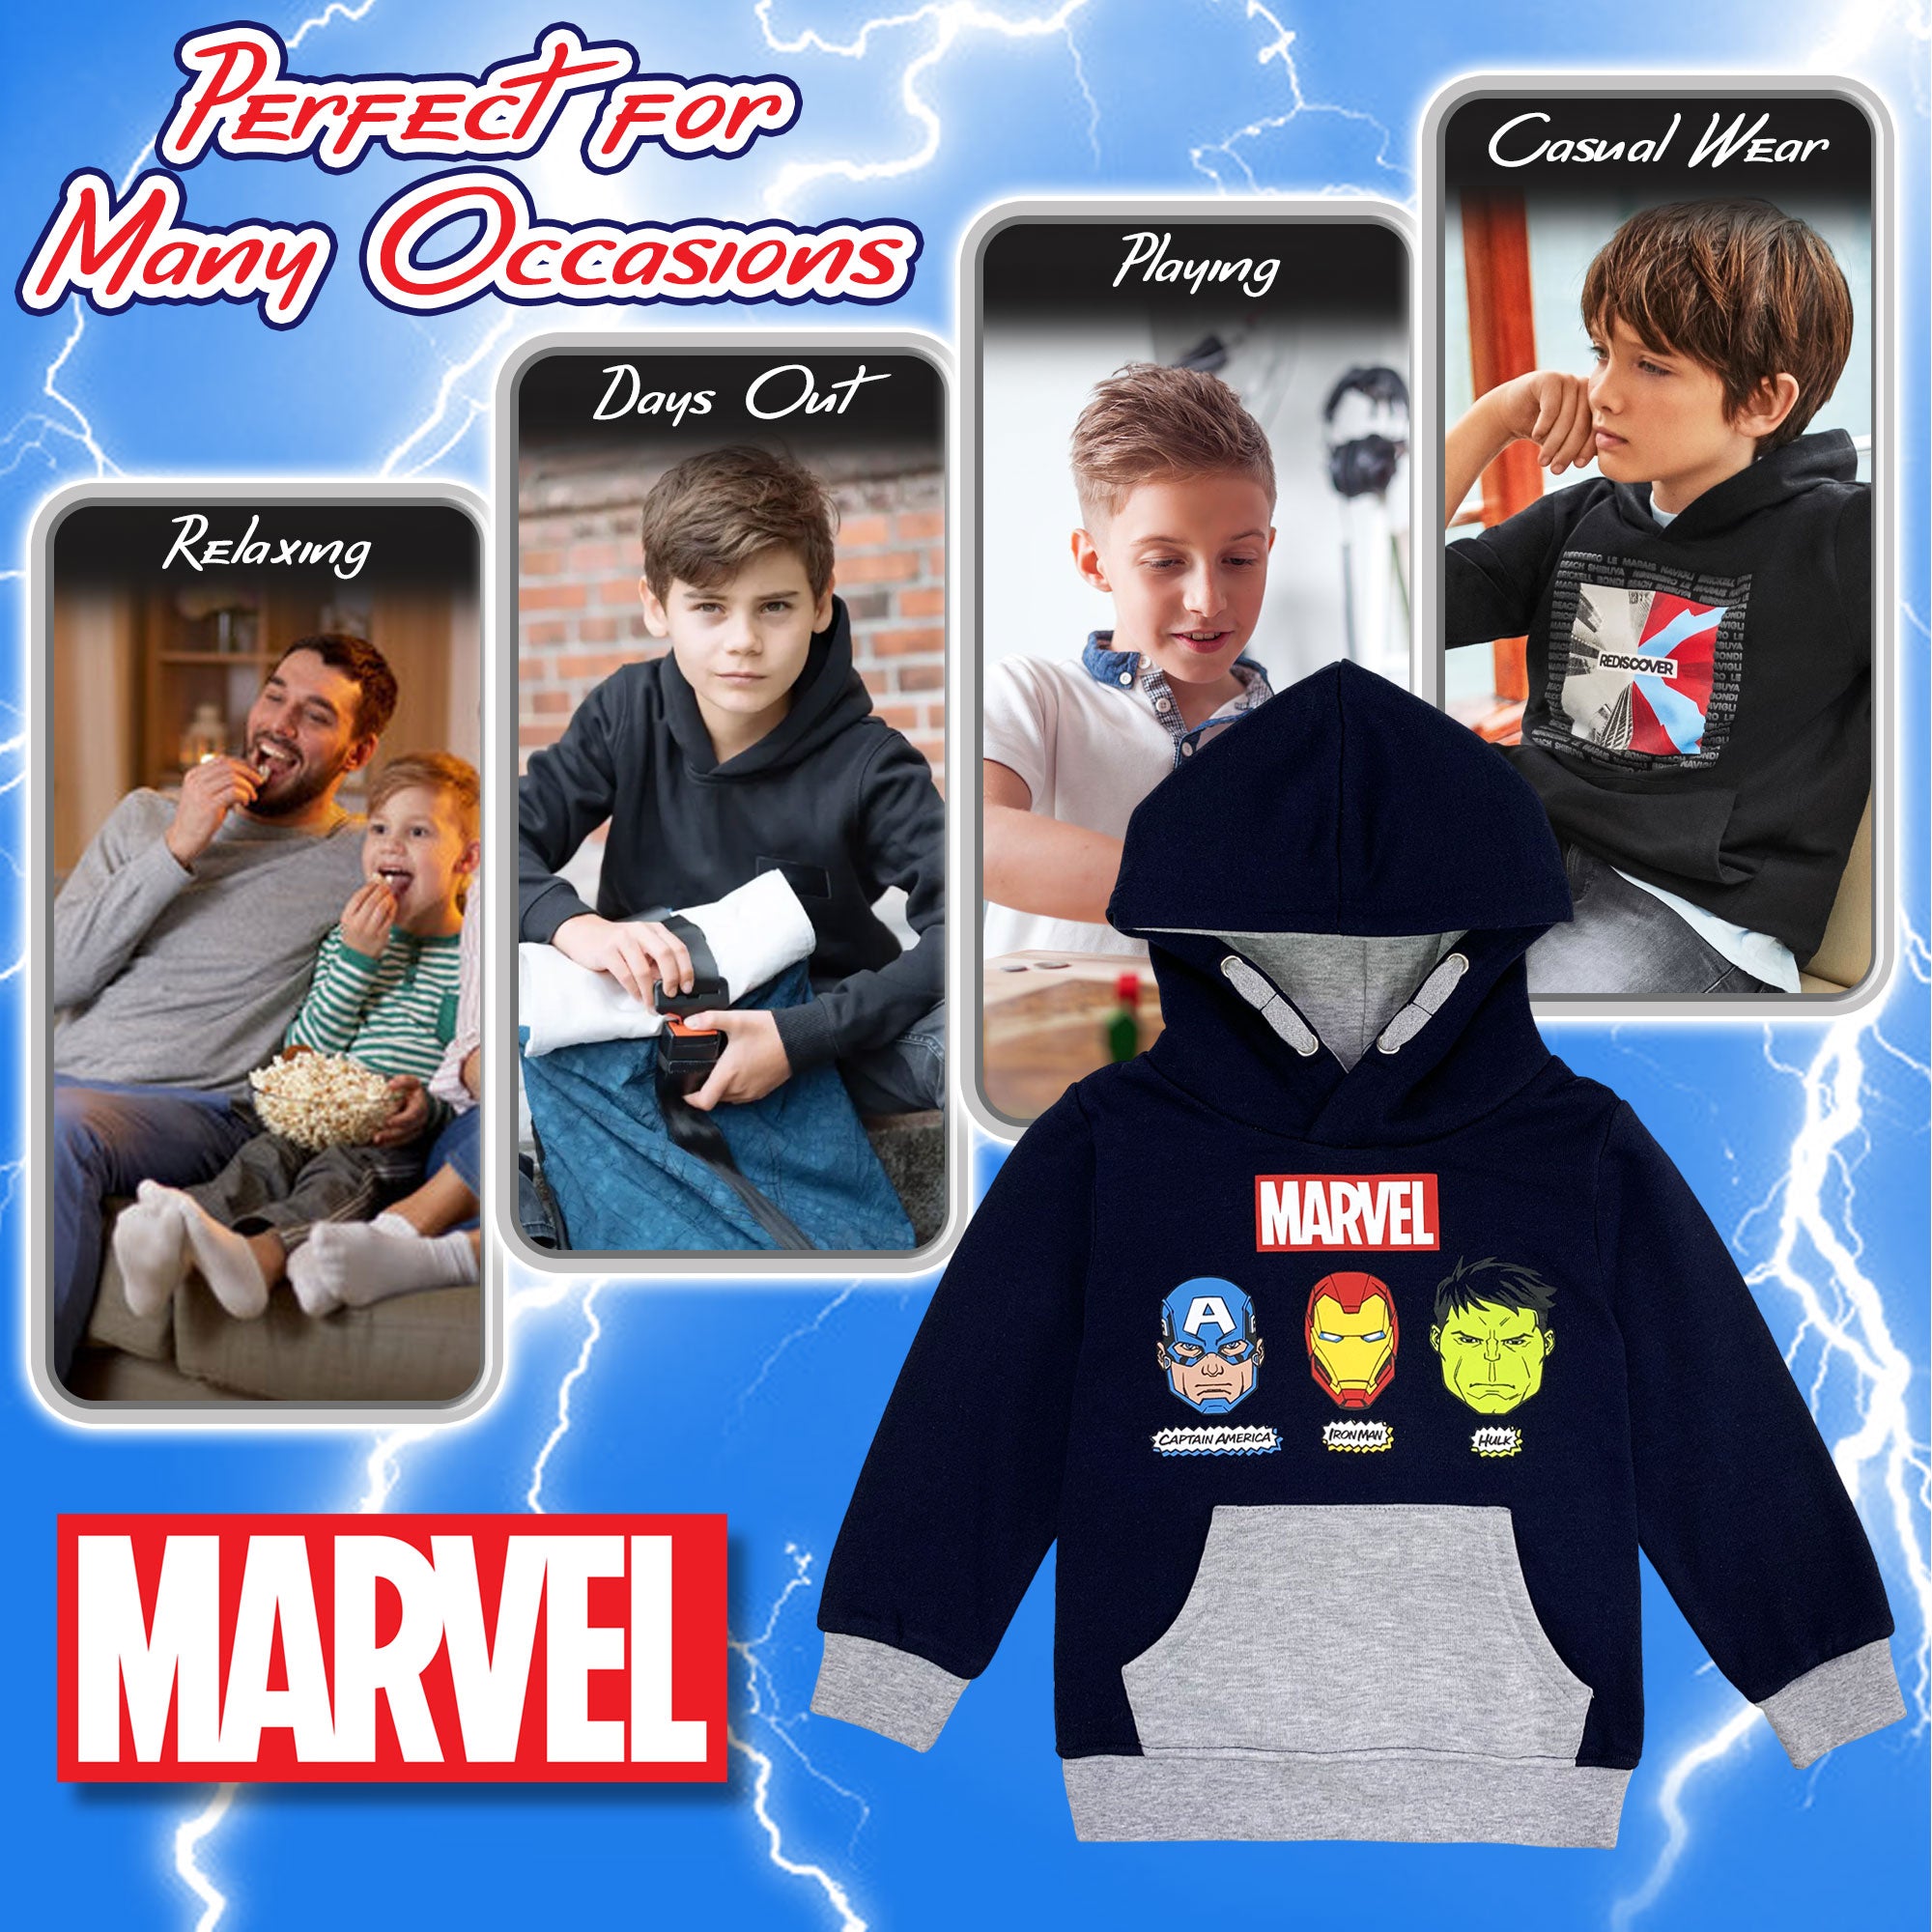 Felpa Marvel Avengers per bambino con cappuccio a maniche lunghe bimbo 6229